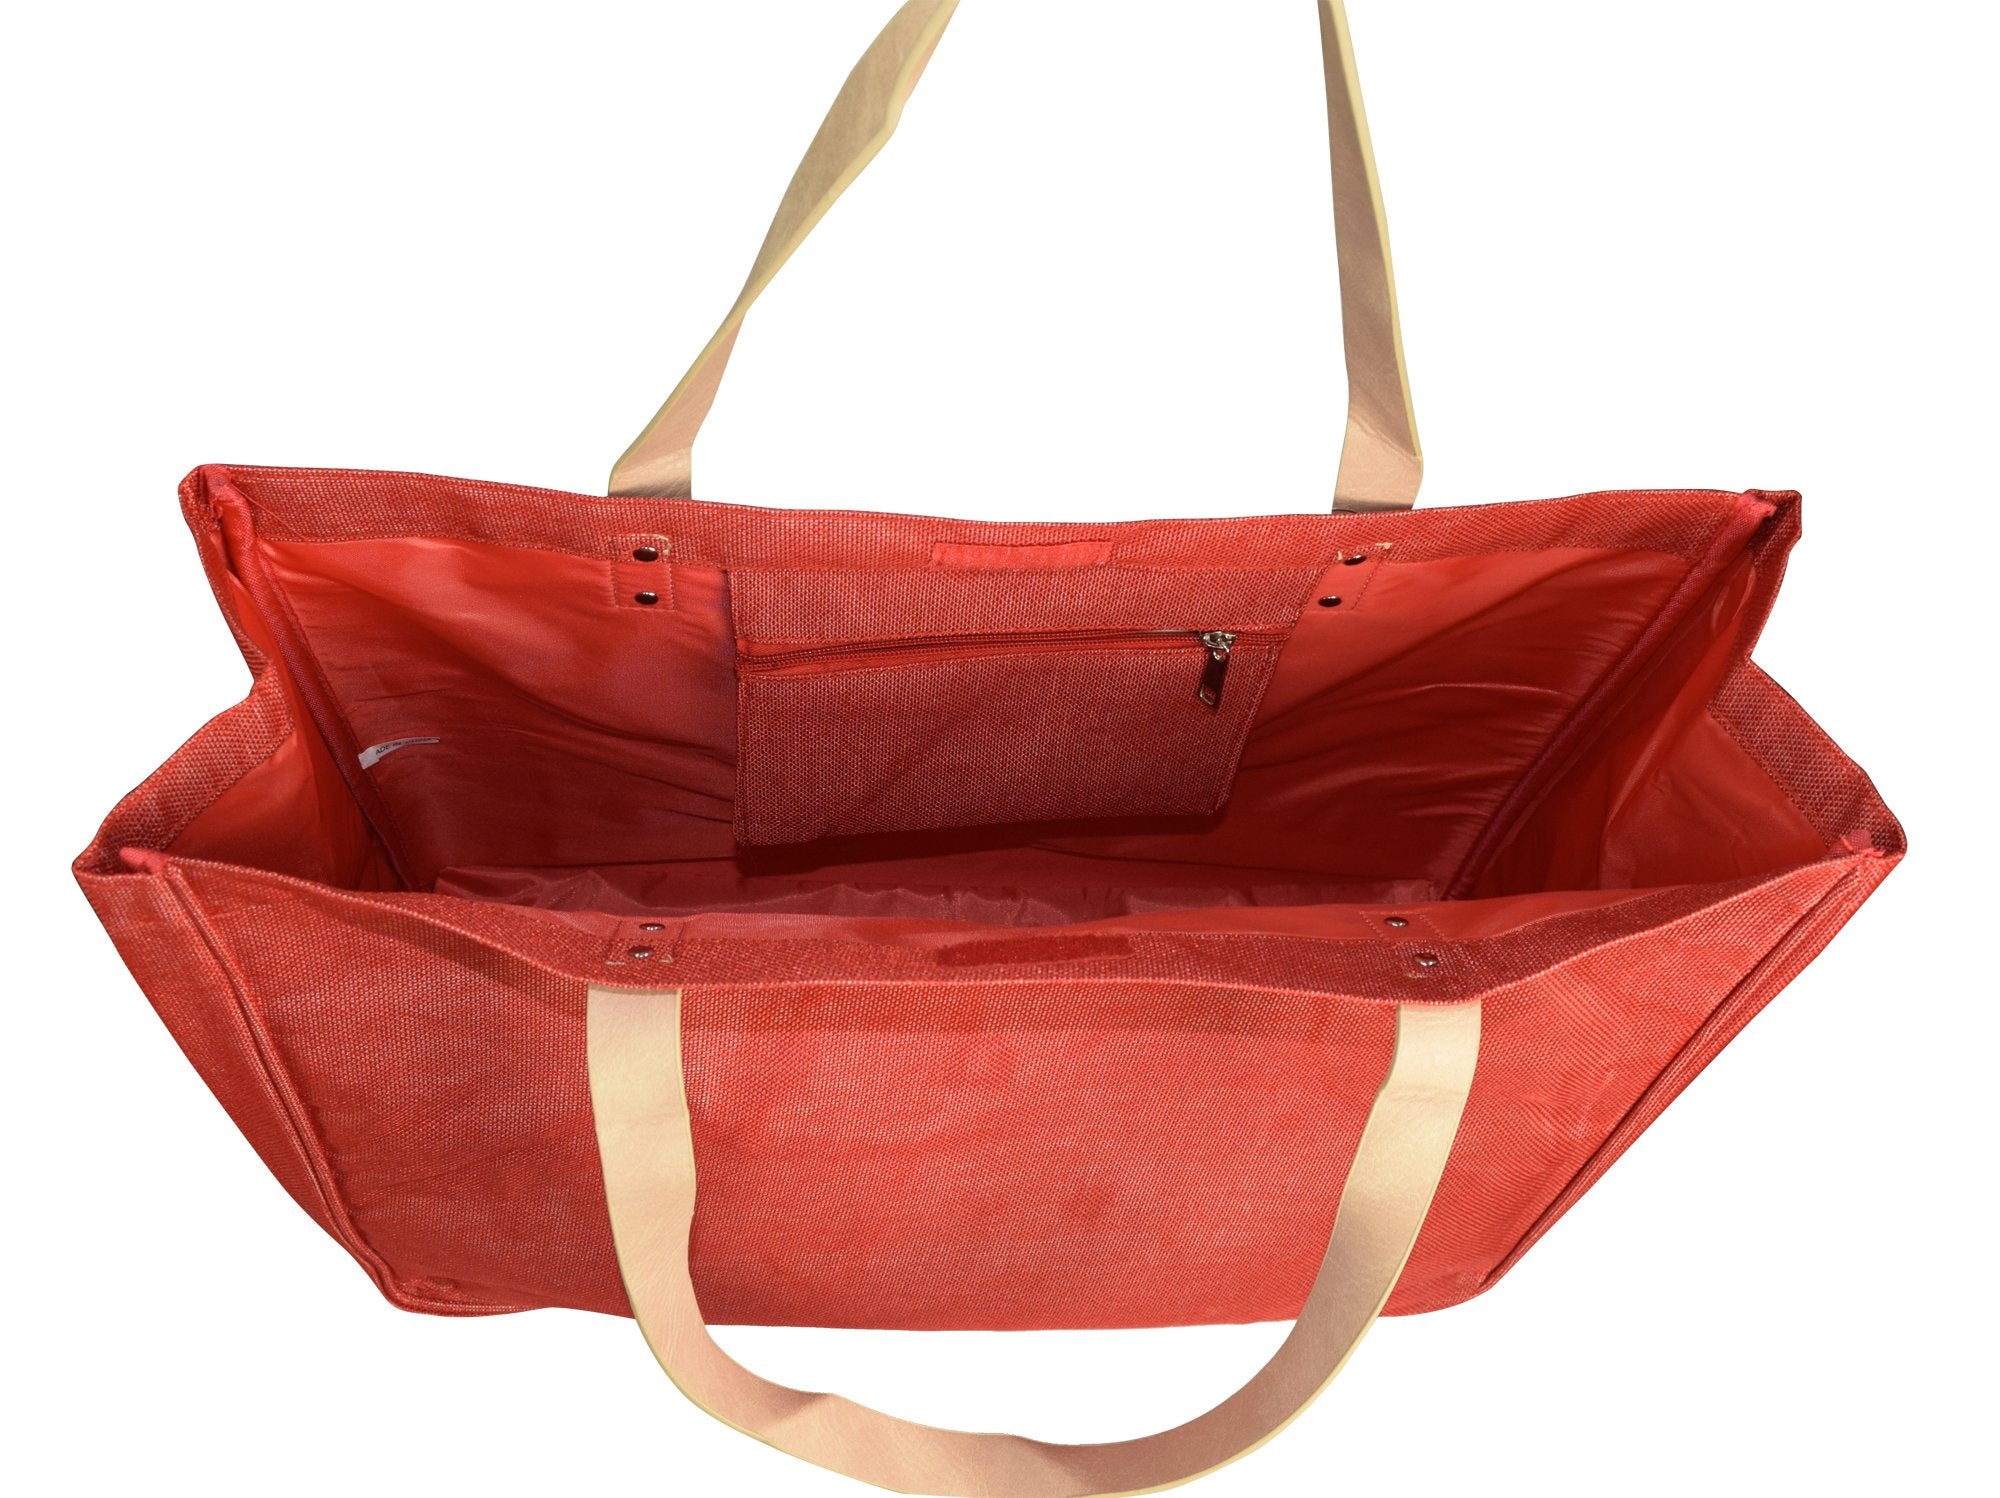 Red Denim Jeans Handbags Hobos Large Travel Tote Bags Shoulder Bags